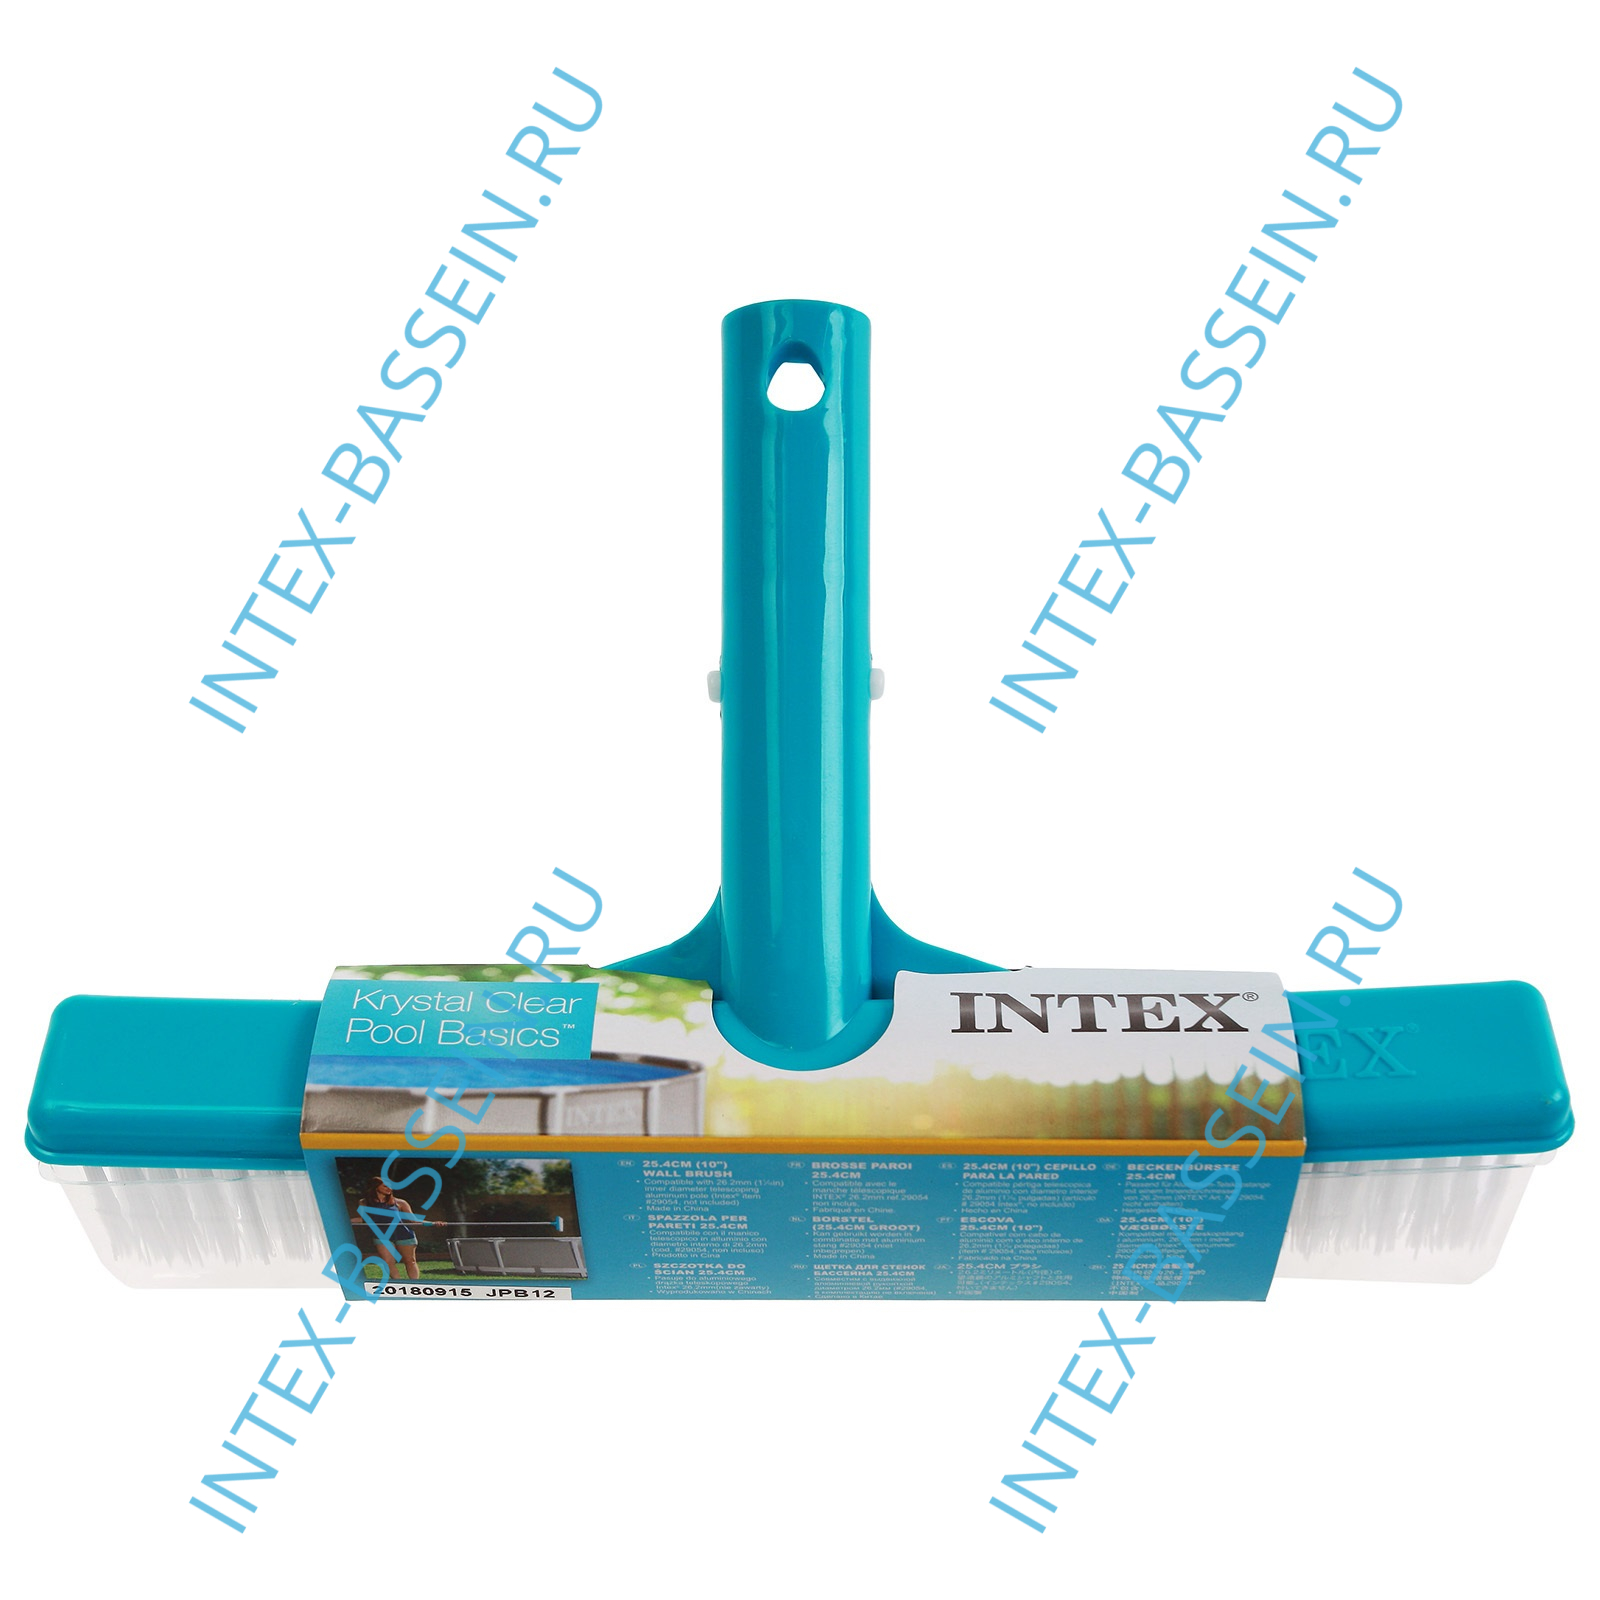 Щётка для чистки бассейна INTEX, артикул 29052